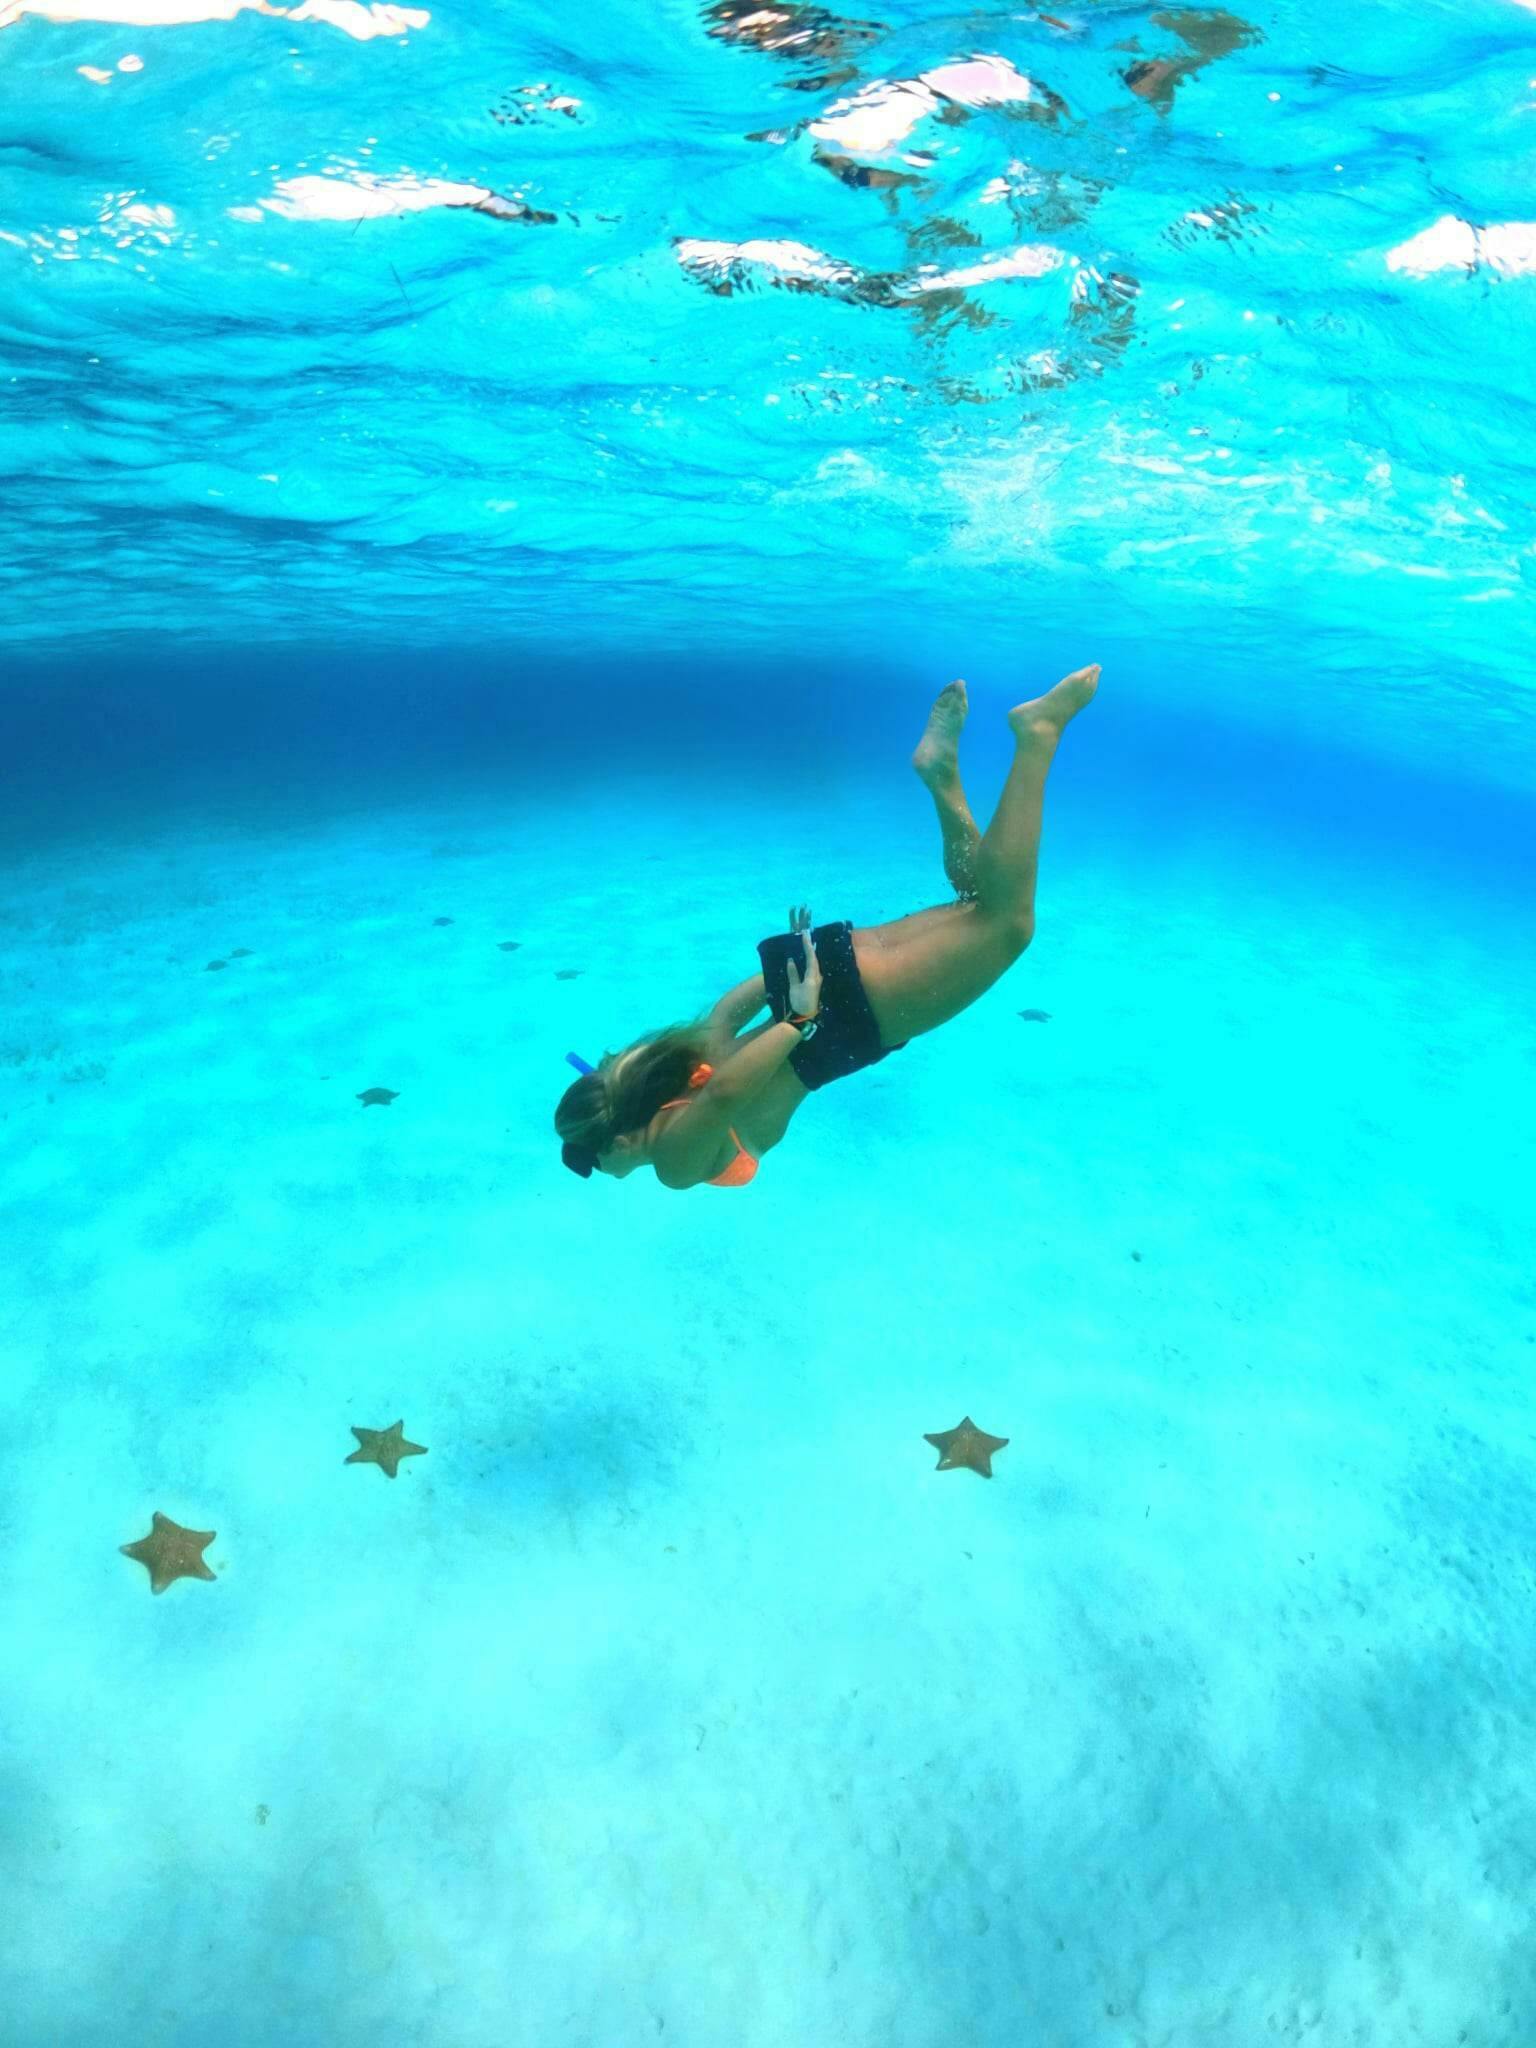 Cozumel Sea Safari with El Cielo Snorkelling